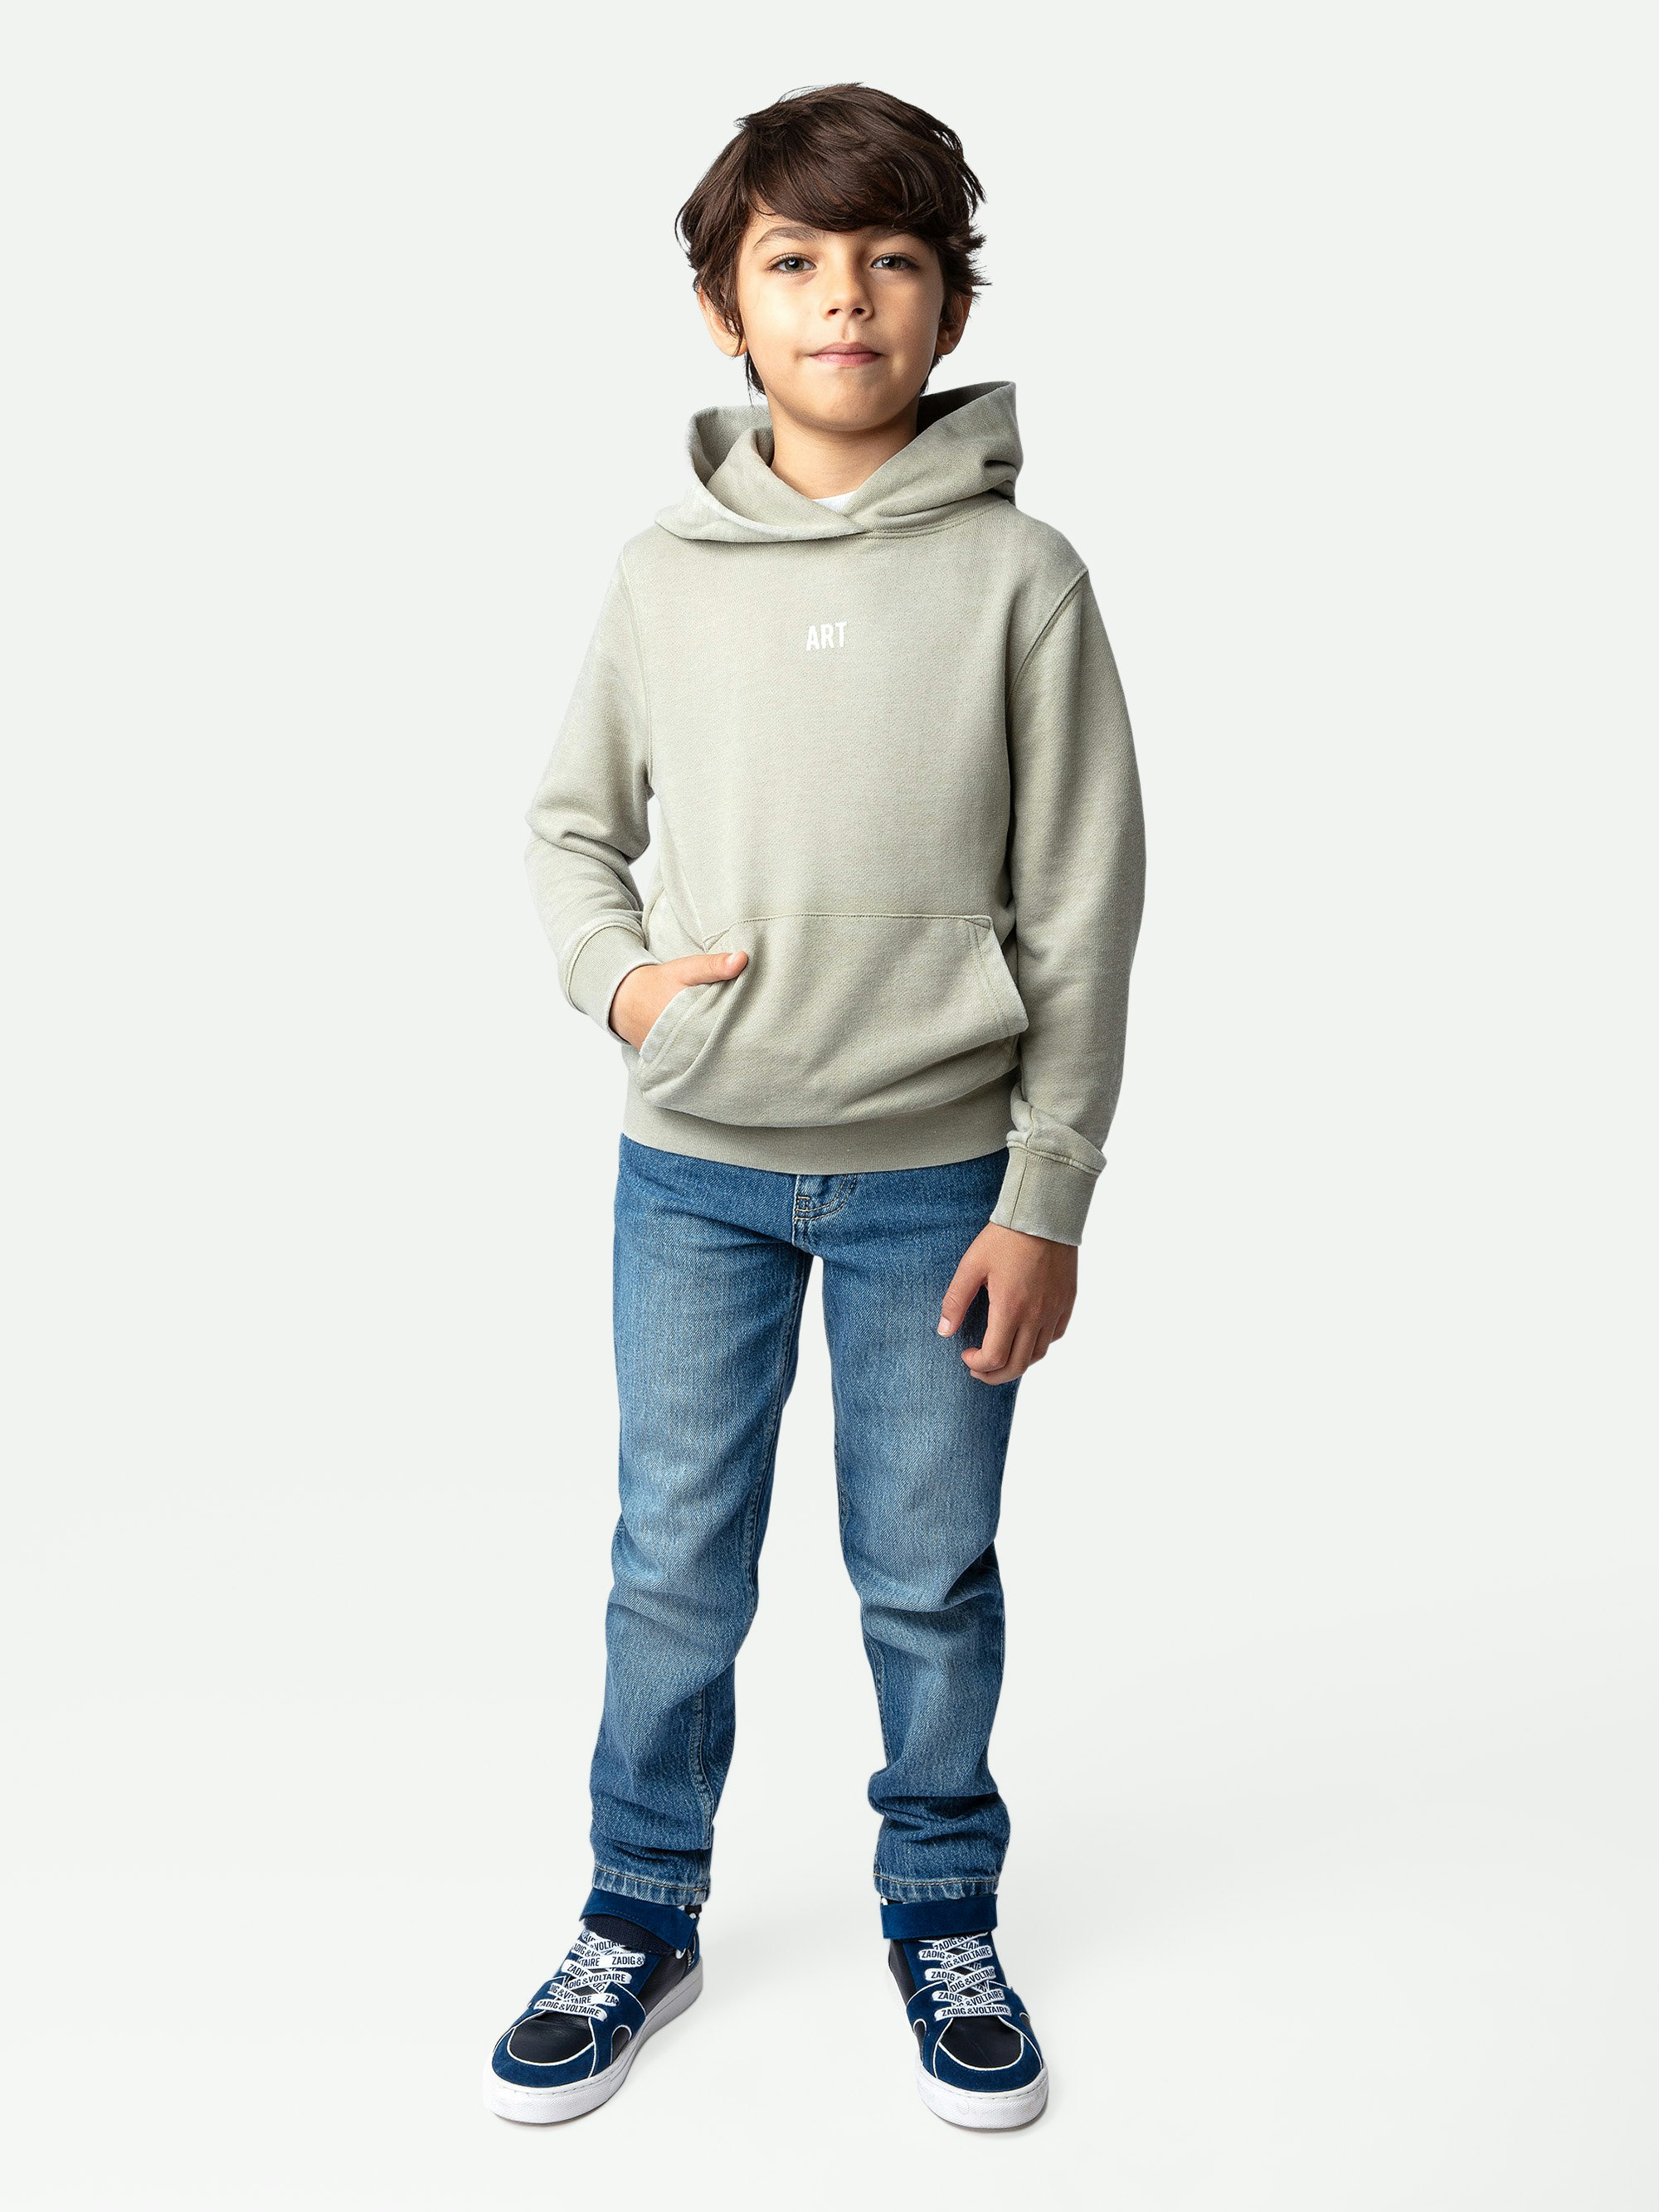 Sweatshirt Sanchi Photoprint Garçon - Sweatshirt garçon à capuche molletonné kaki clair orné d'une illustration et d'un photoprint.